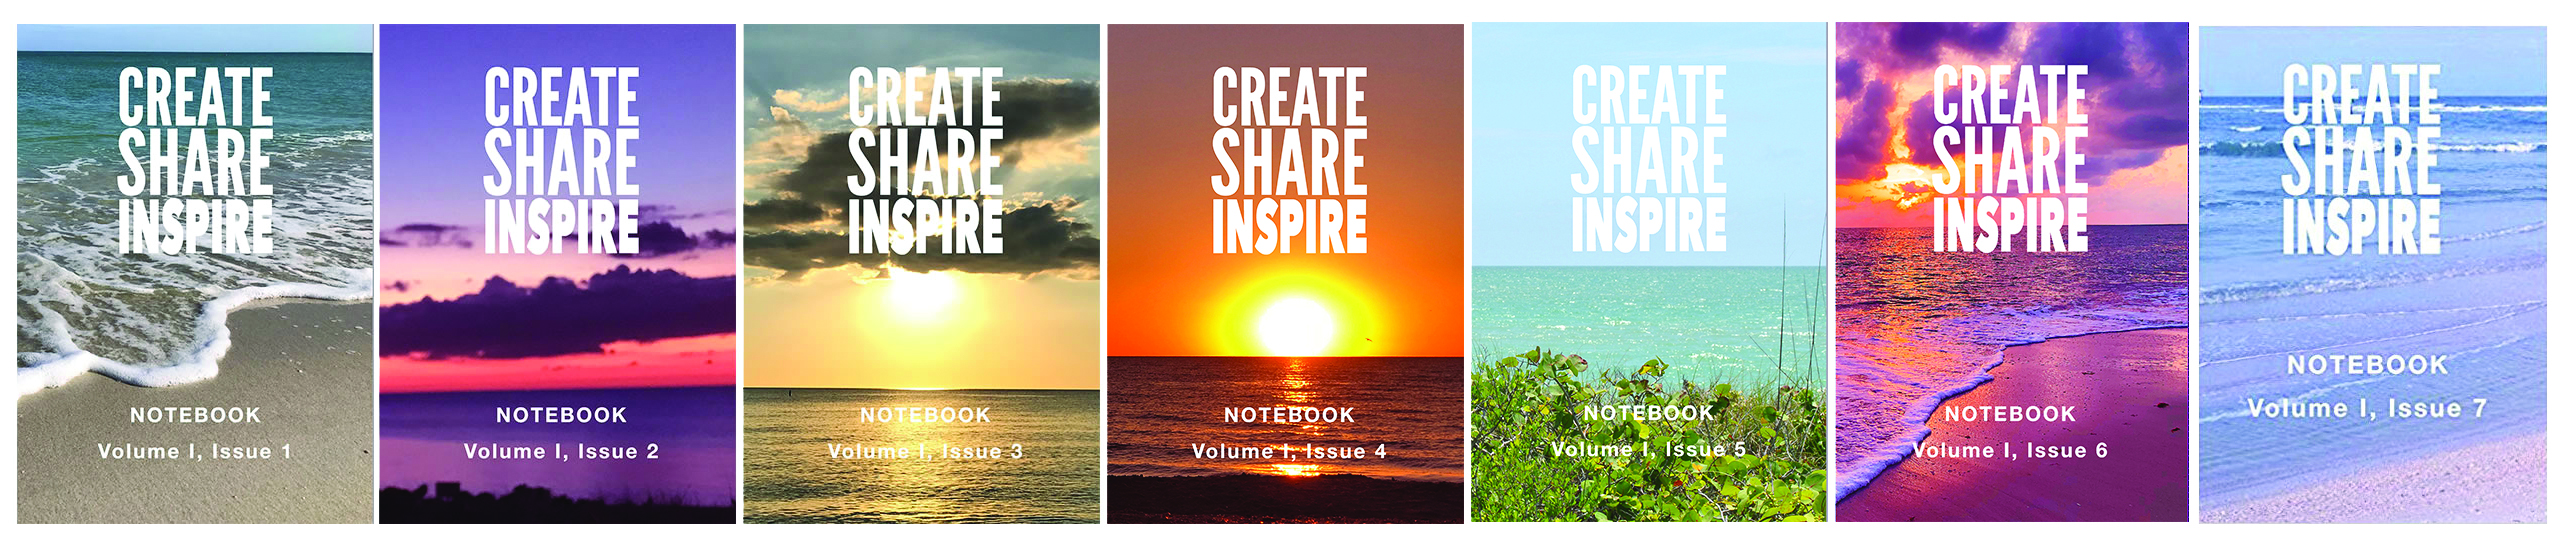 Create share inspire journals Kristin Omdahl